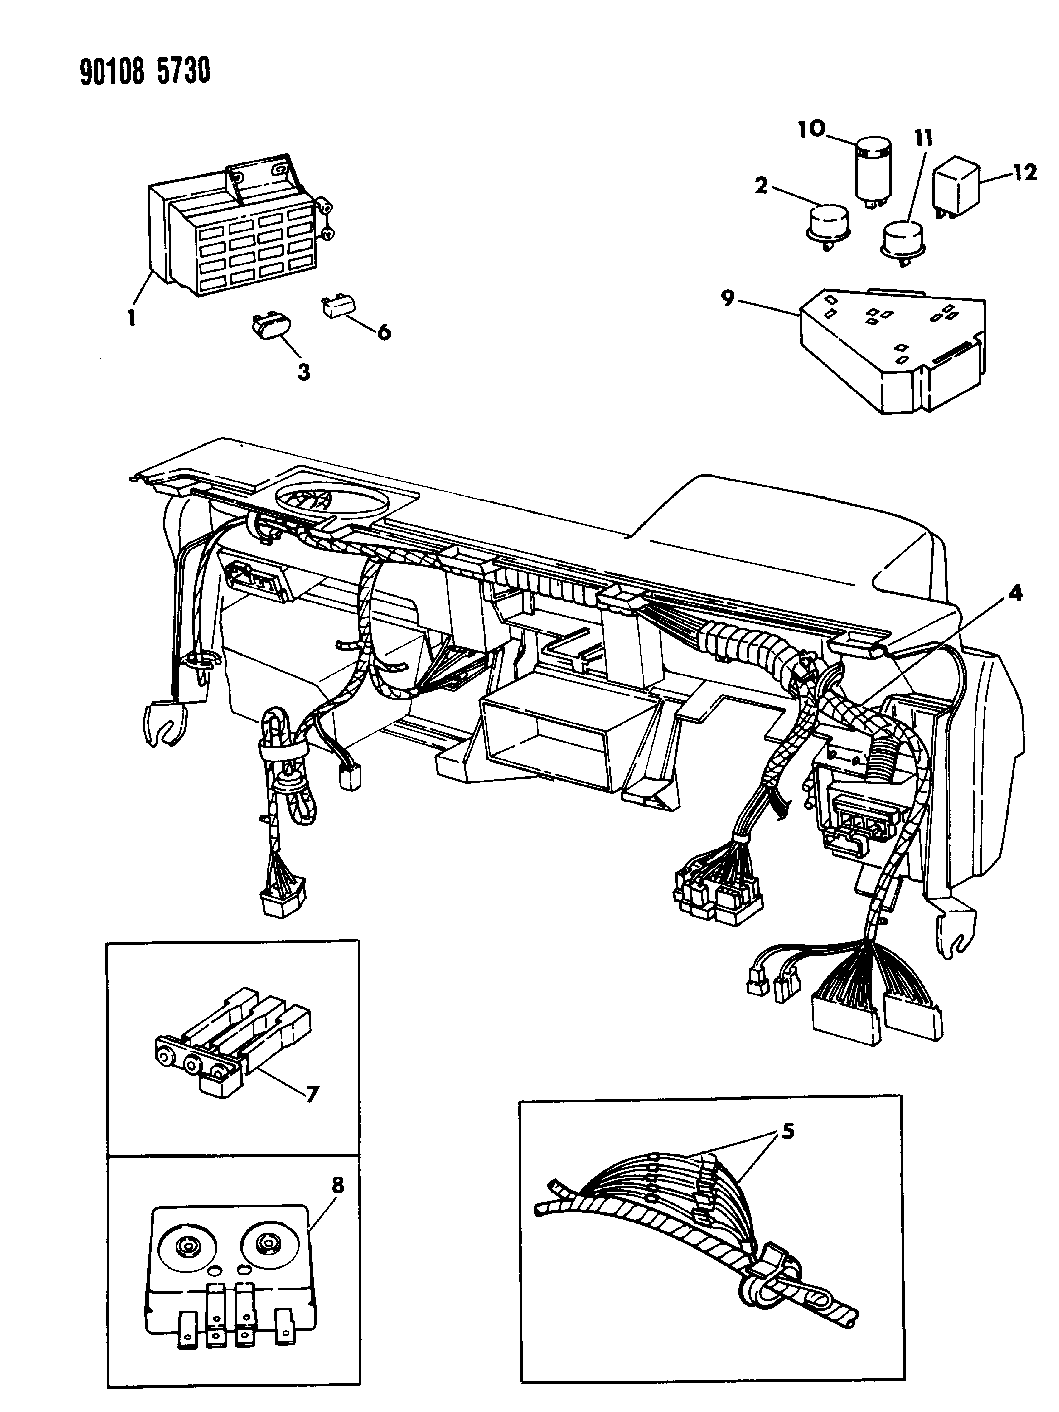 1990 Dodge Wiring Diagram - Wiring Diagram Schema